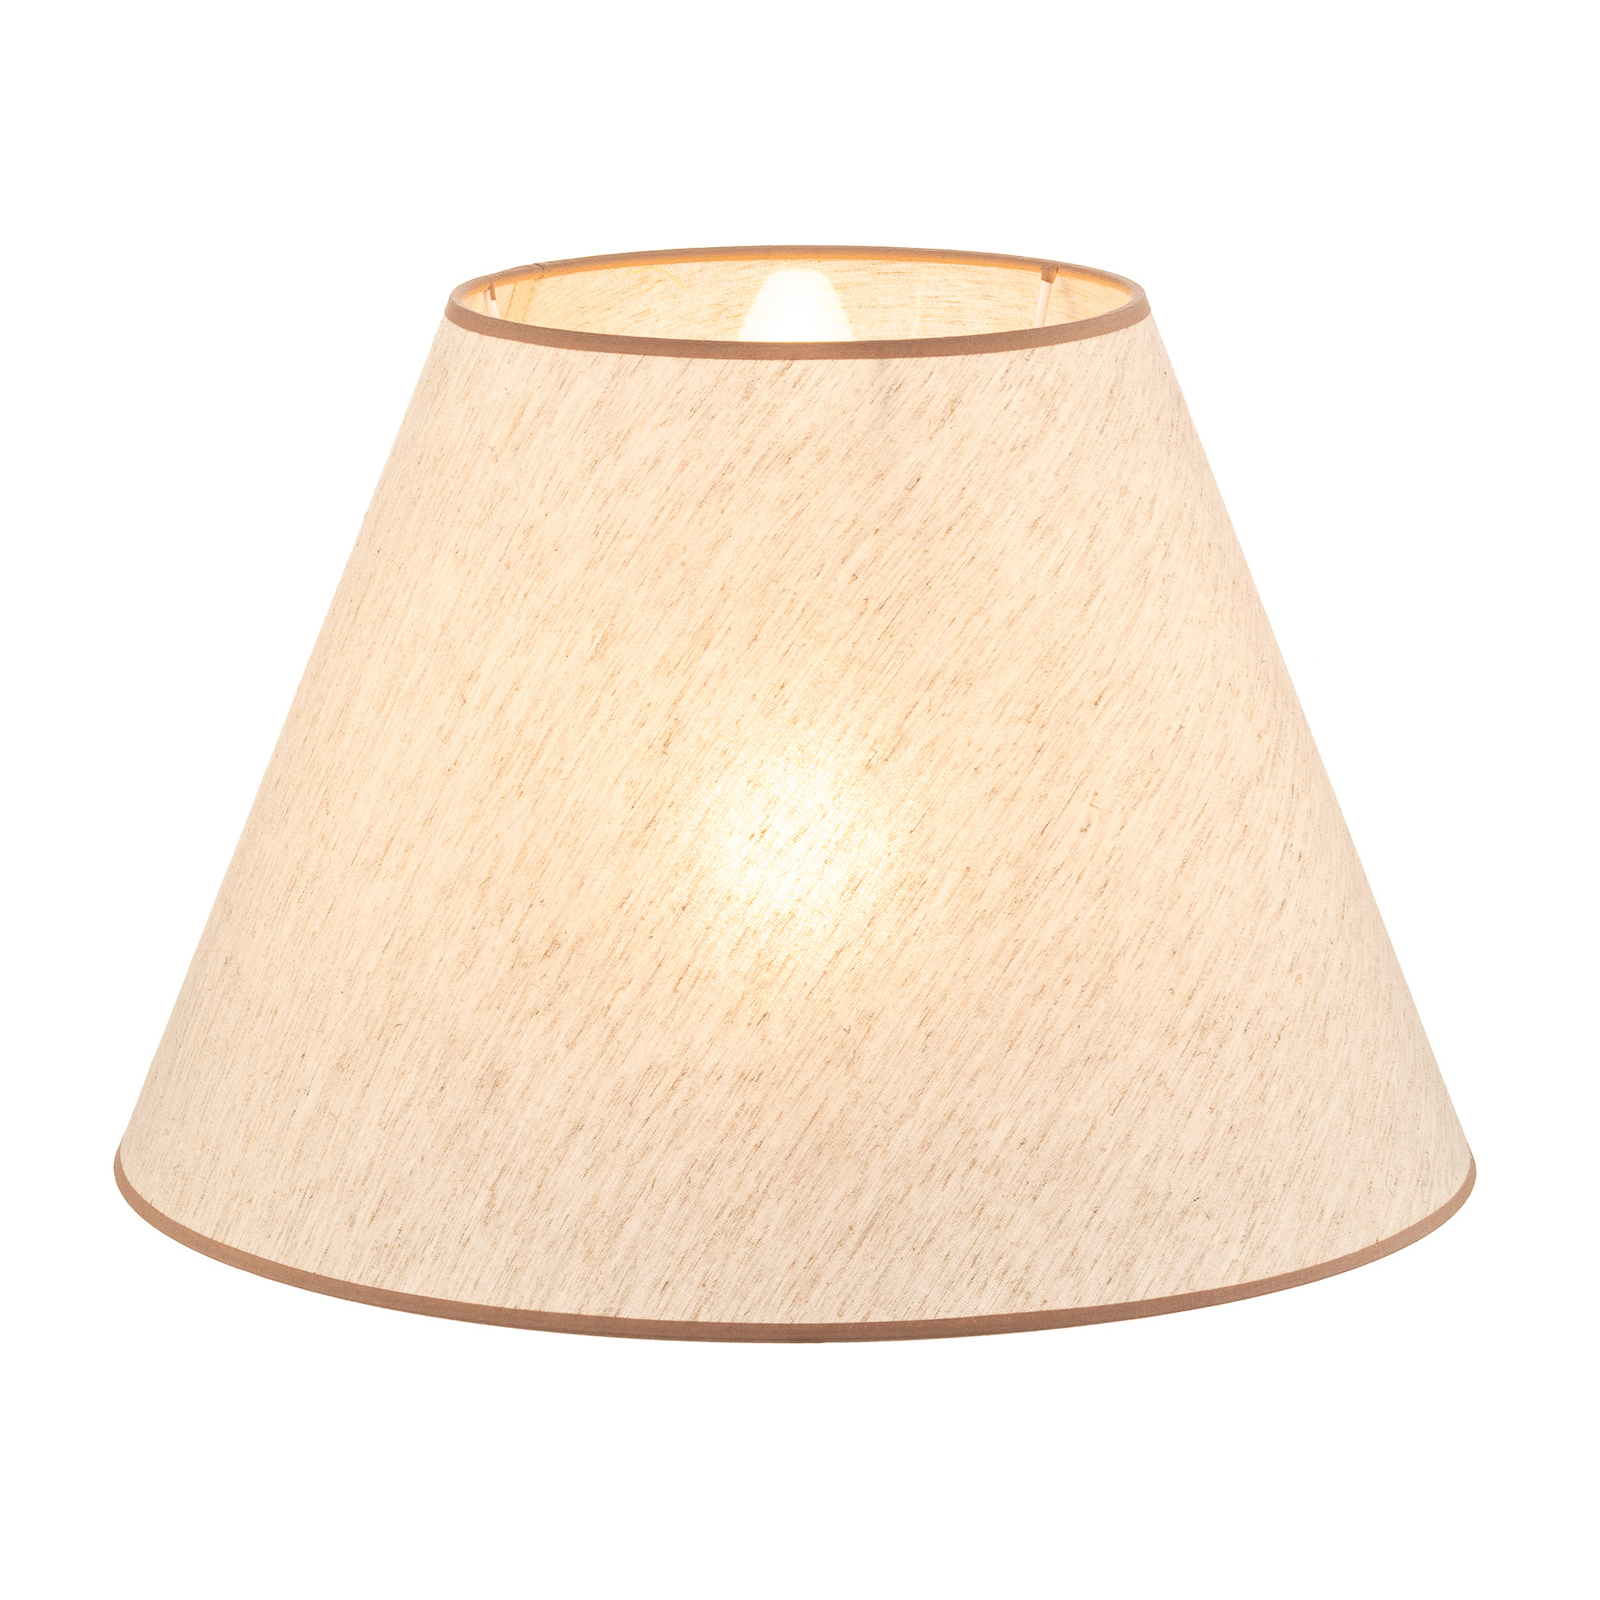 Pseudosofia lampshade for floor lamp ecru/beige